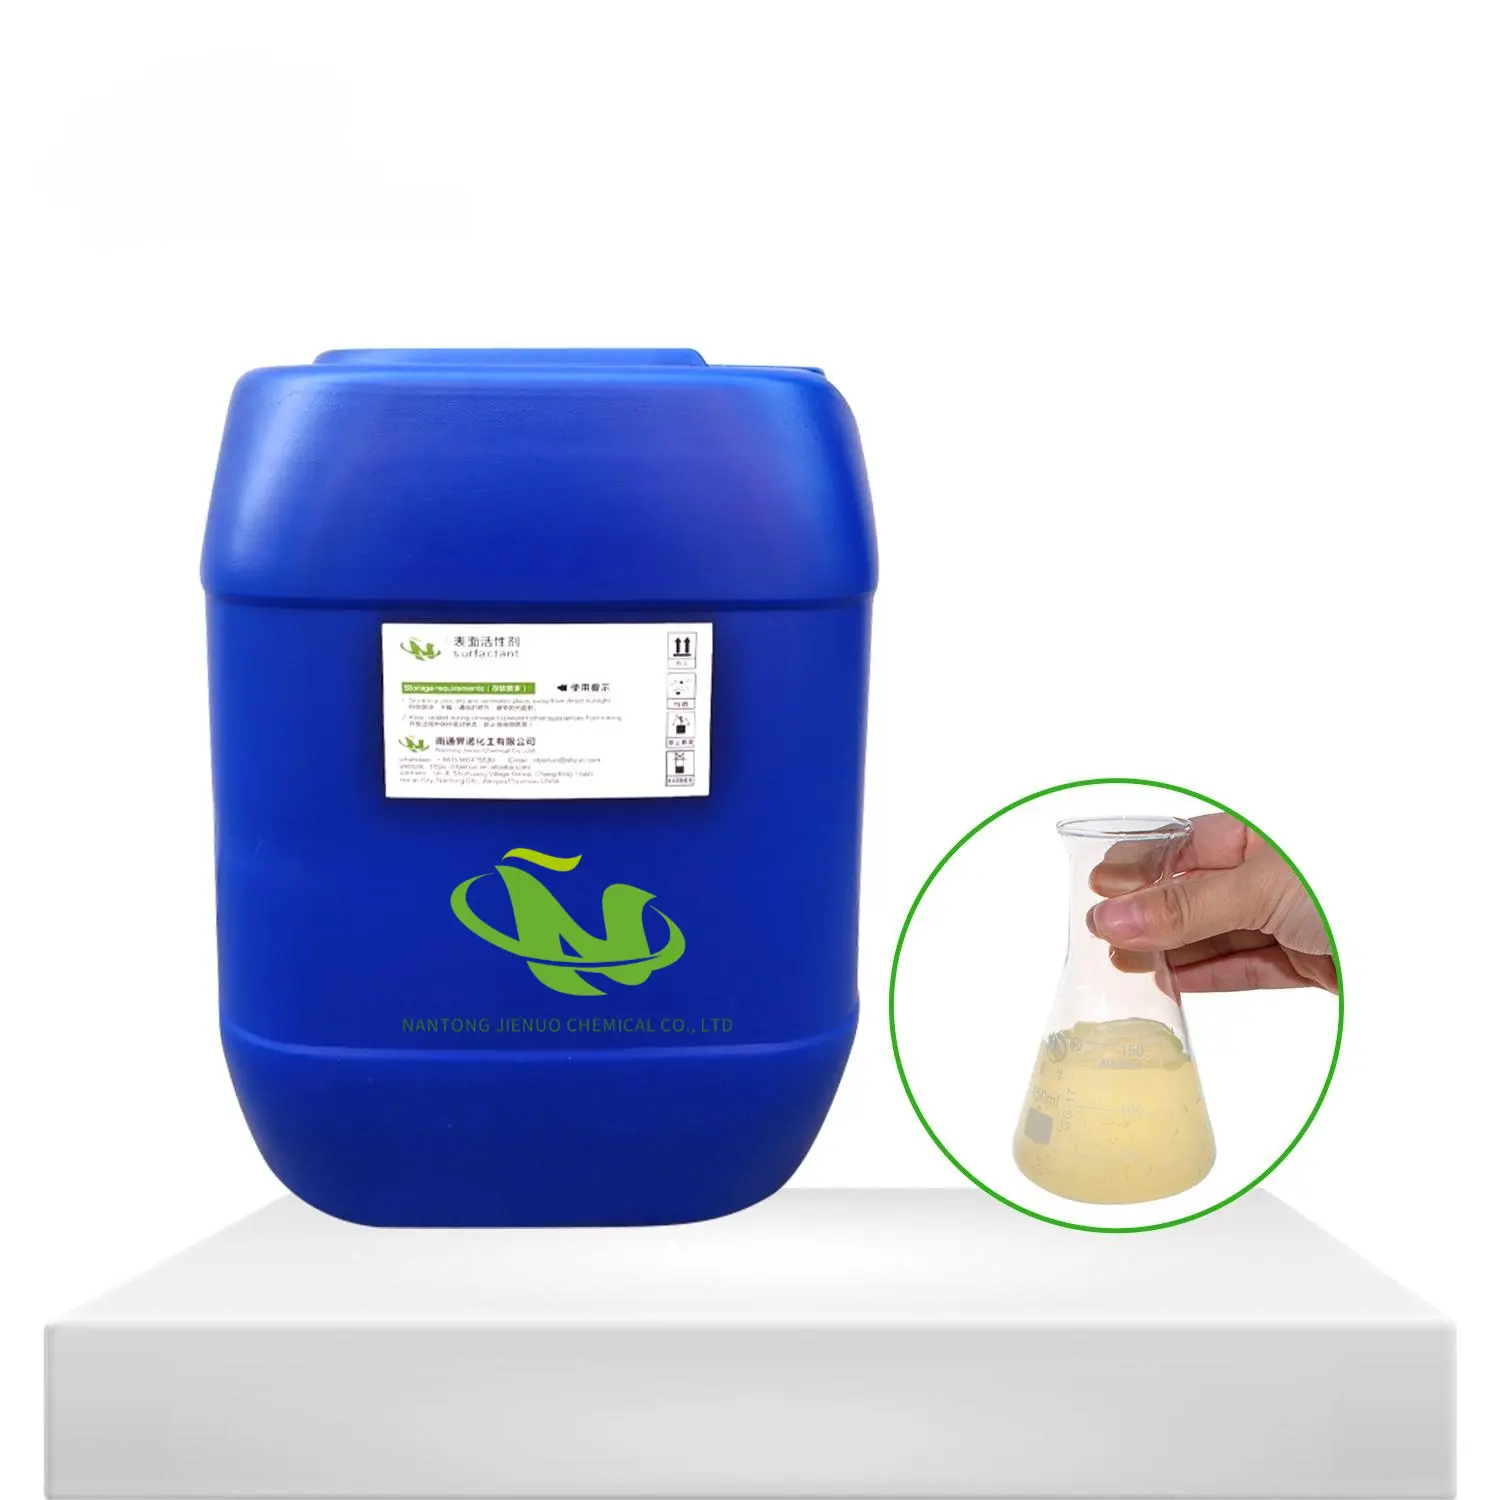 Tween 60 CAS 9005-67-8 gıda tıbbı kozmetik suda çözünür kaplamalar üretiminde kullanılan kimyasal yardımcı ajan